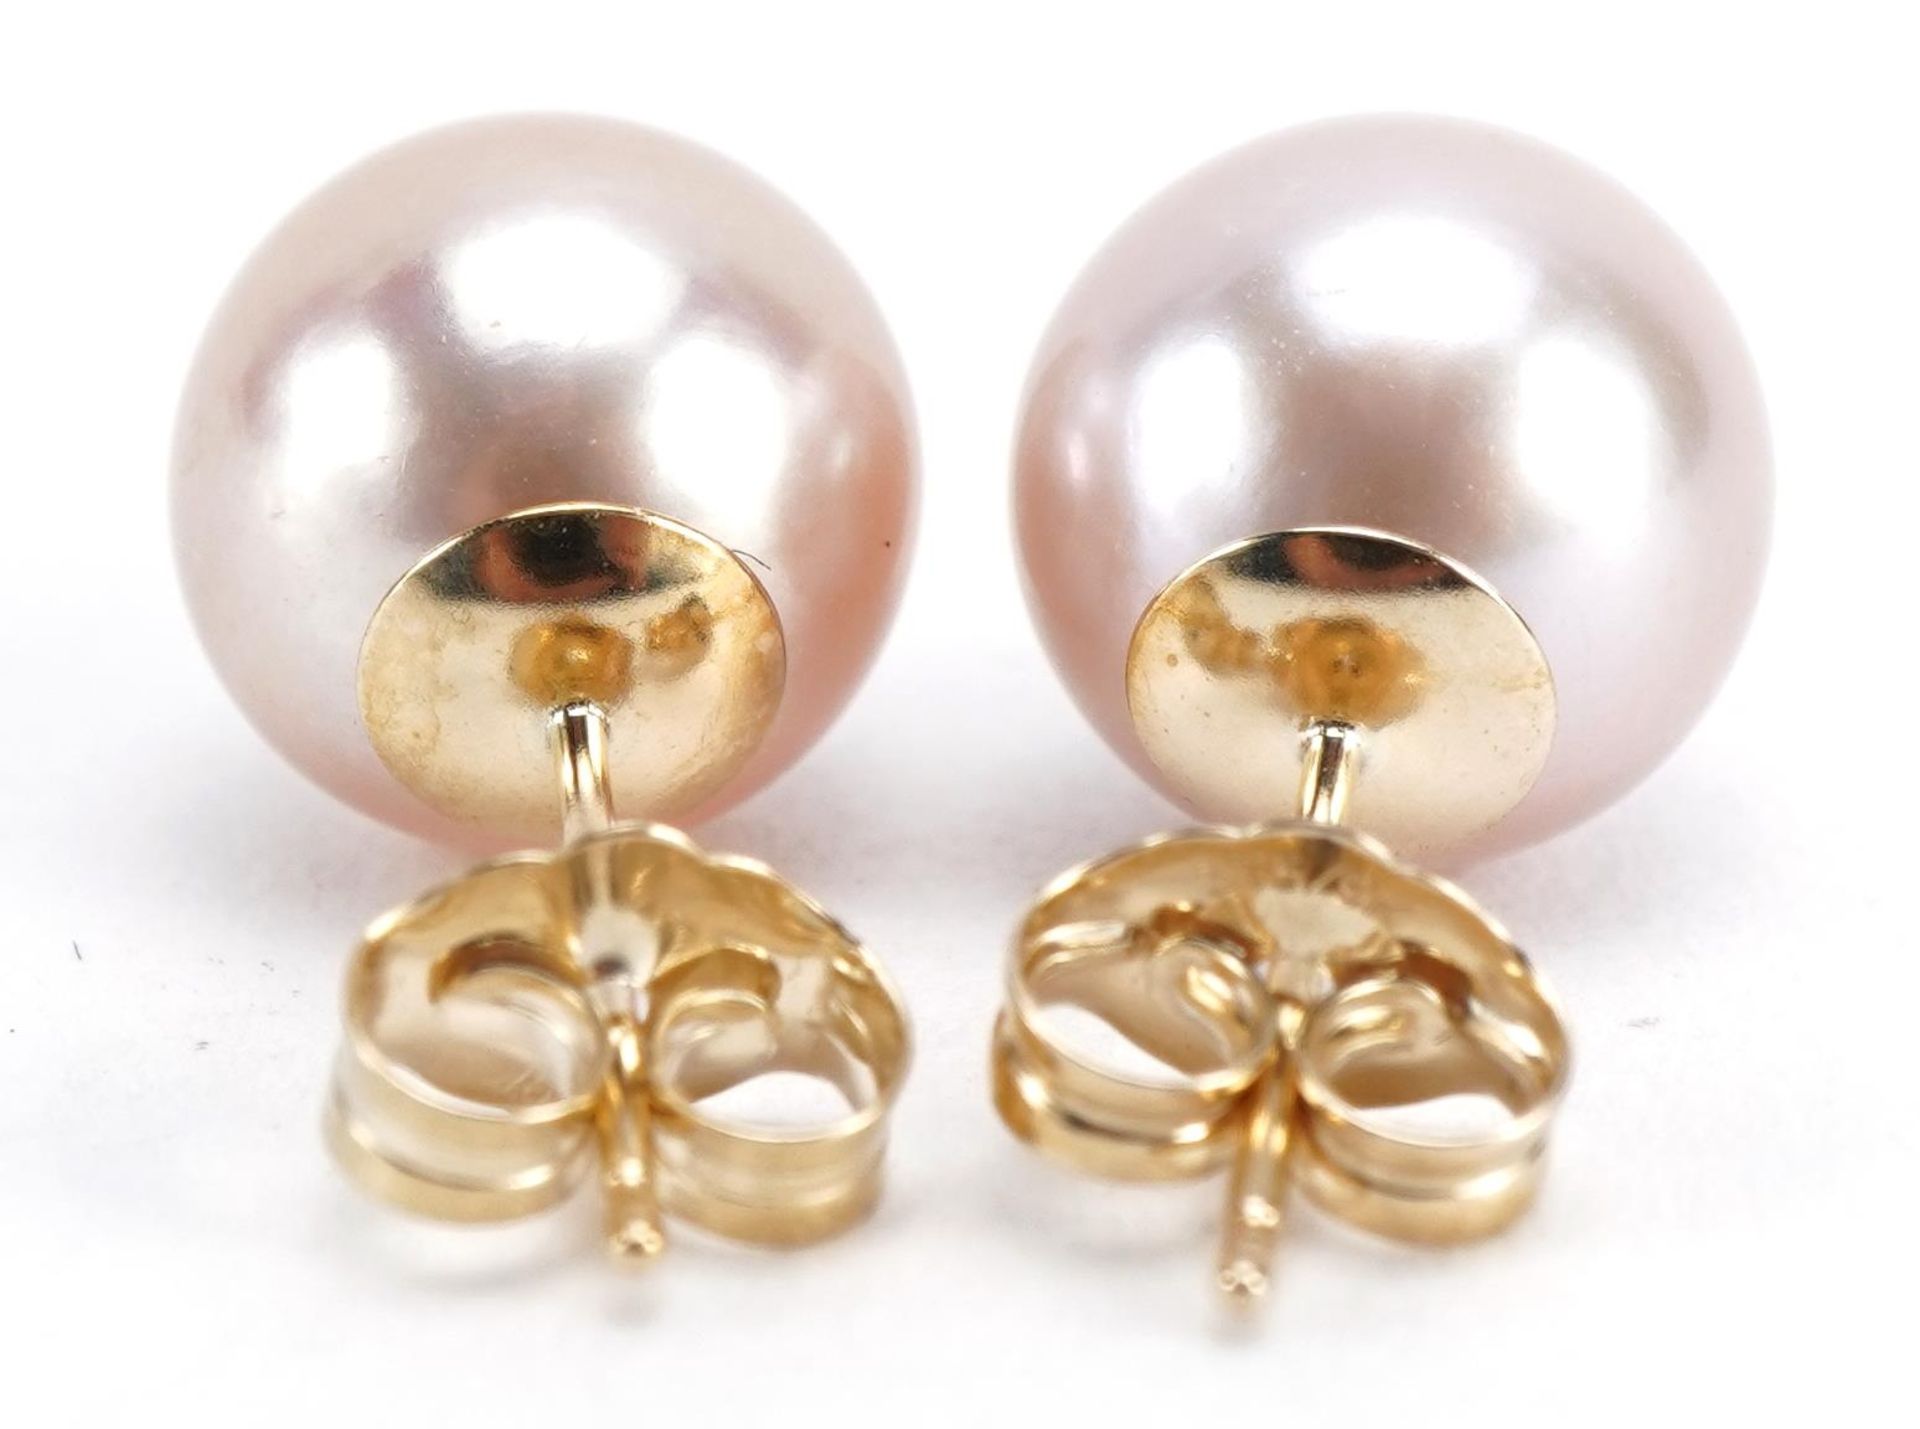 Pair of 9ct gold freshwater pearl stud earrings, 9mm in diameter, 2.4g - Image 2 of 2